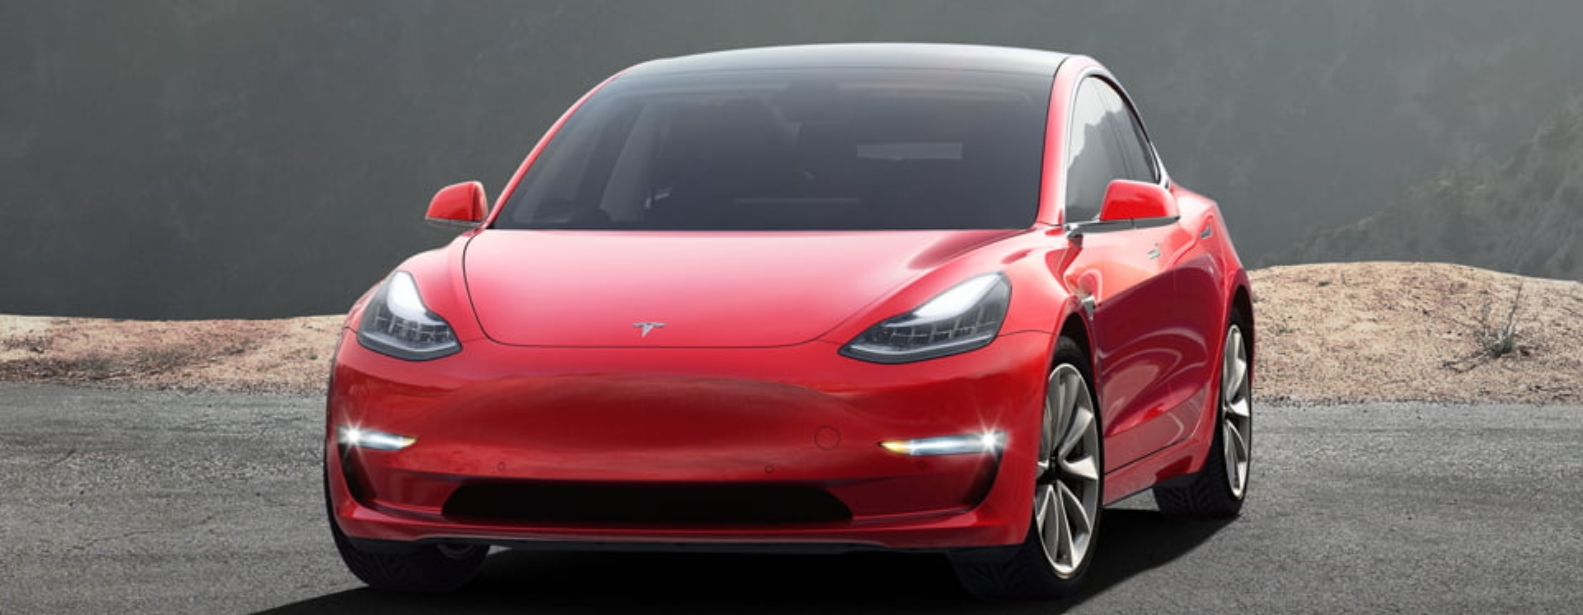 Sinte Tesla-kunder får beskjed om at deres Model 3 er forsinket